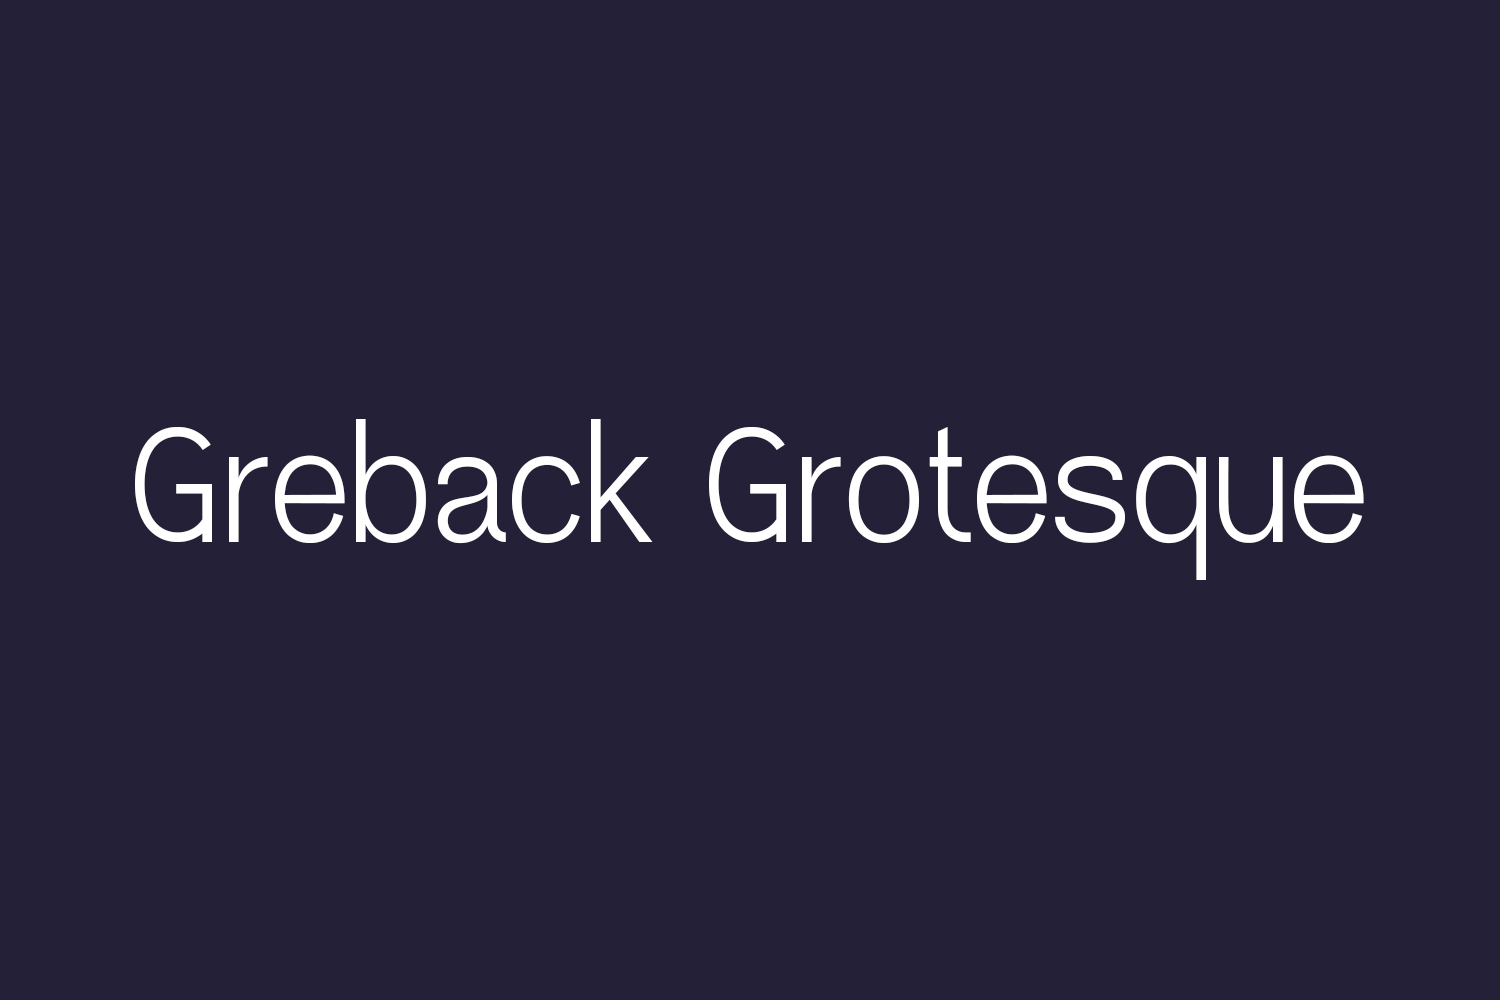 Greback Grotesque Free Font